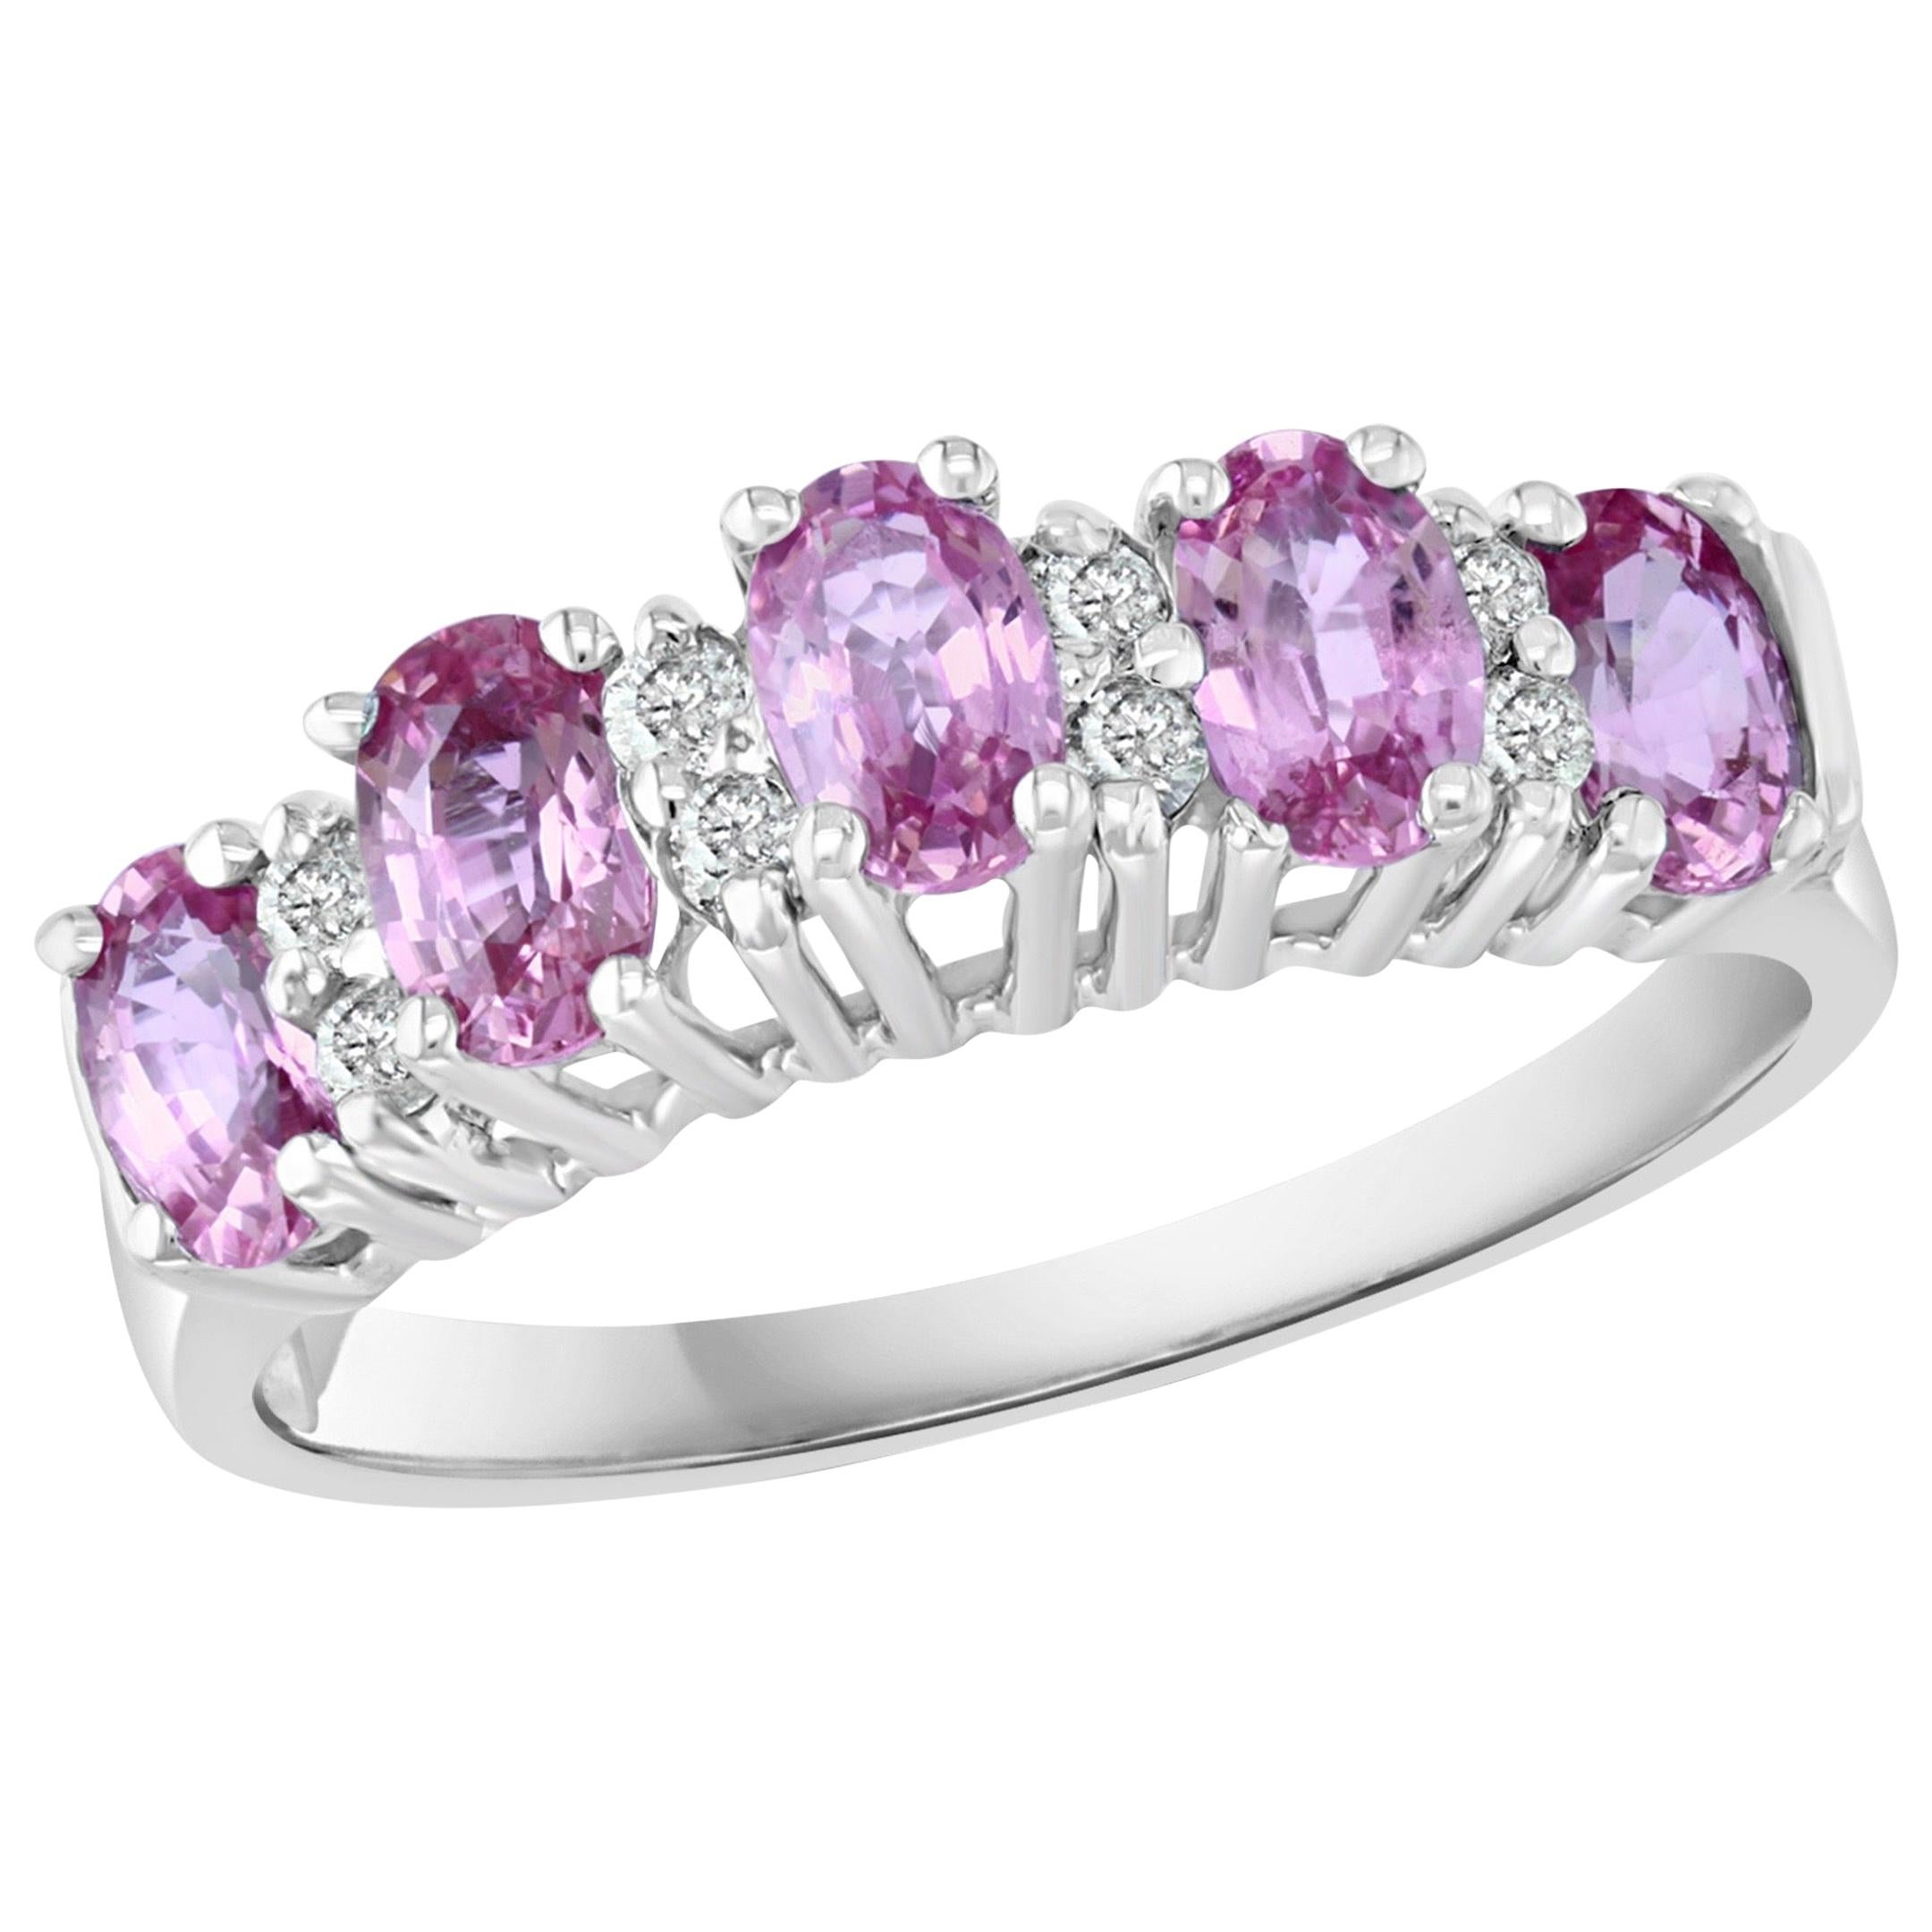 1.25 Carat Pink Sapphire and Diamond 14 Karat White Gold Ring, Estate